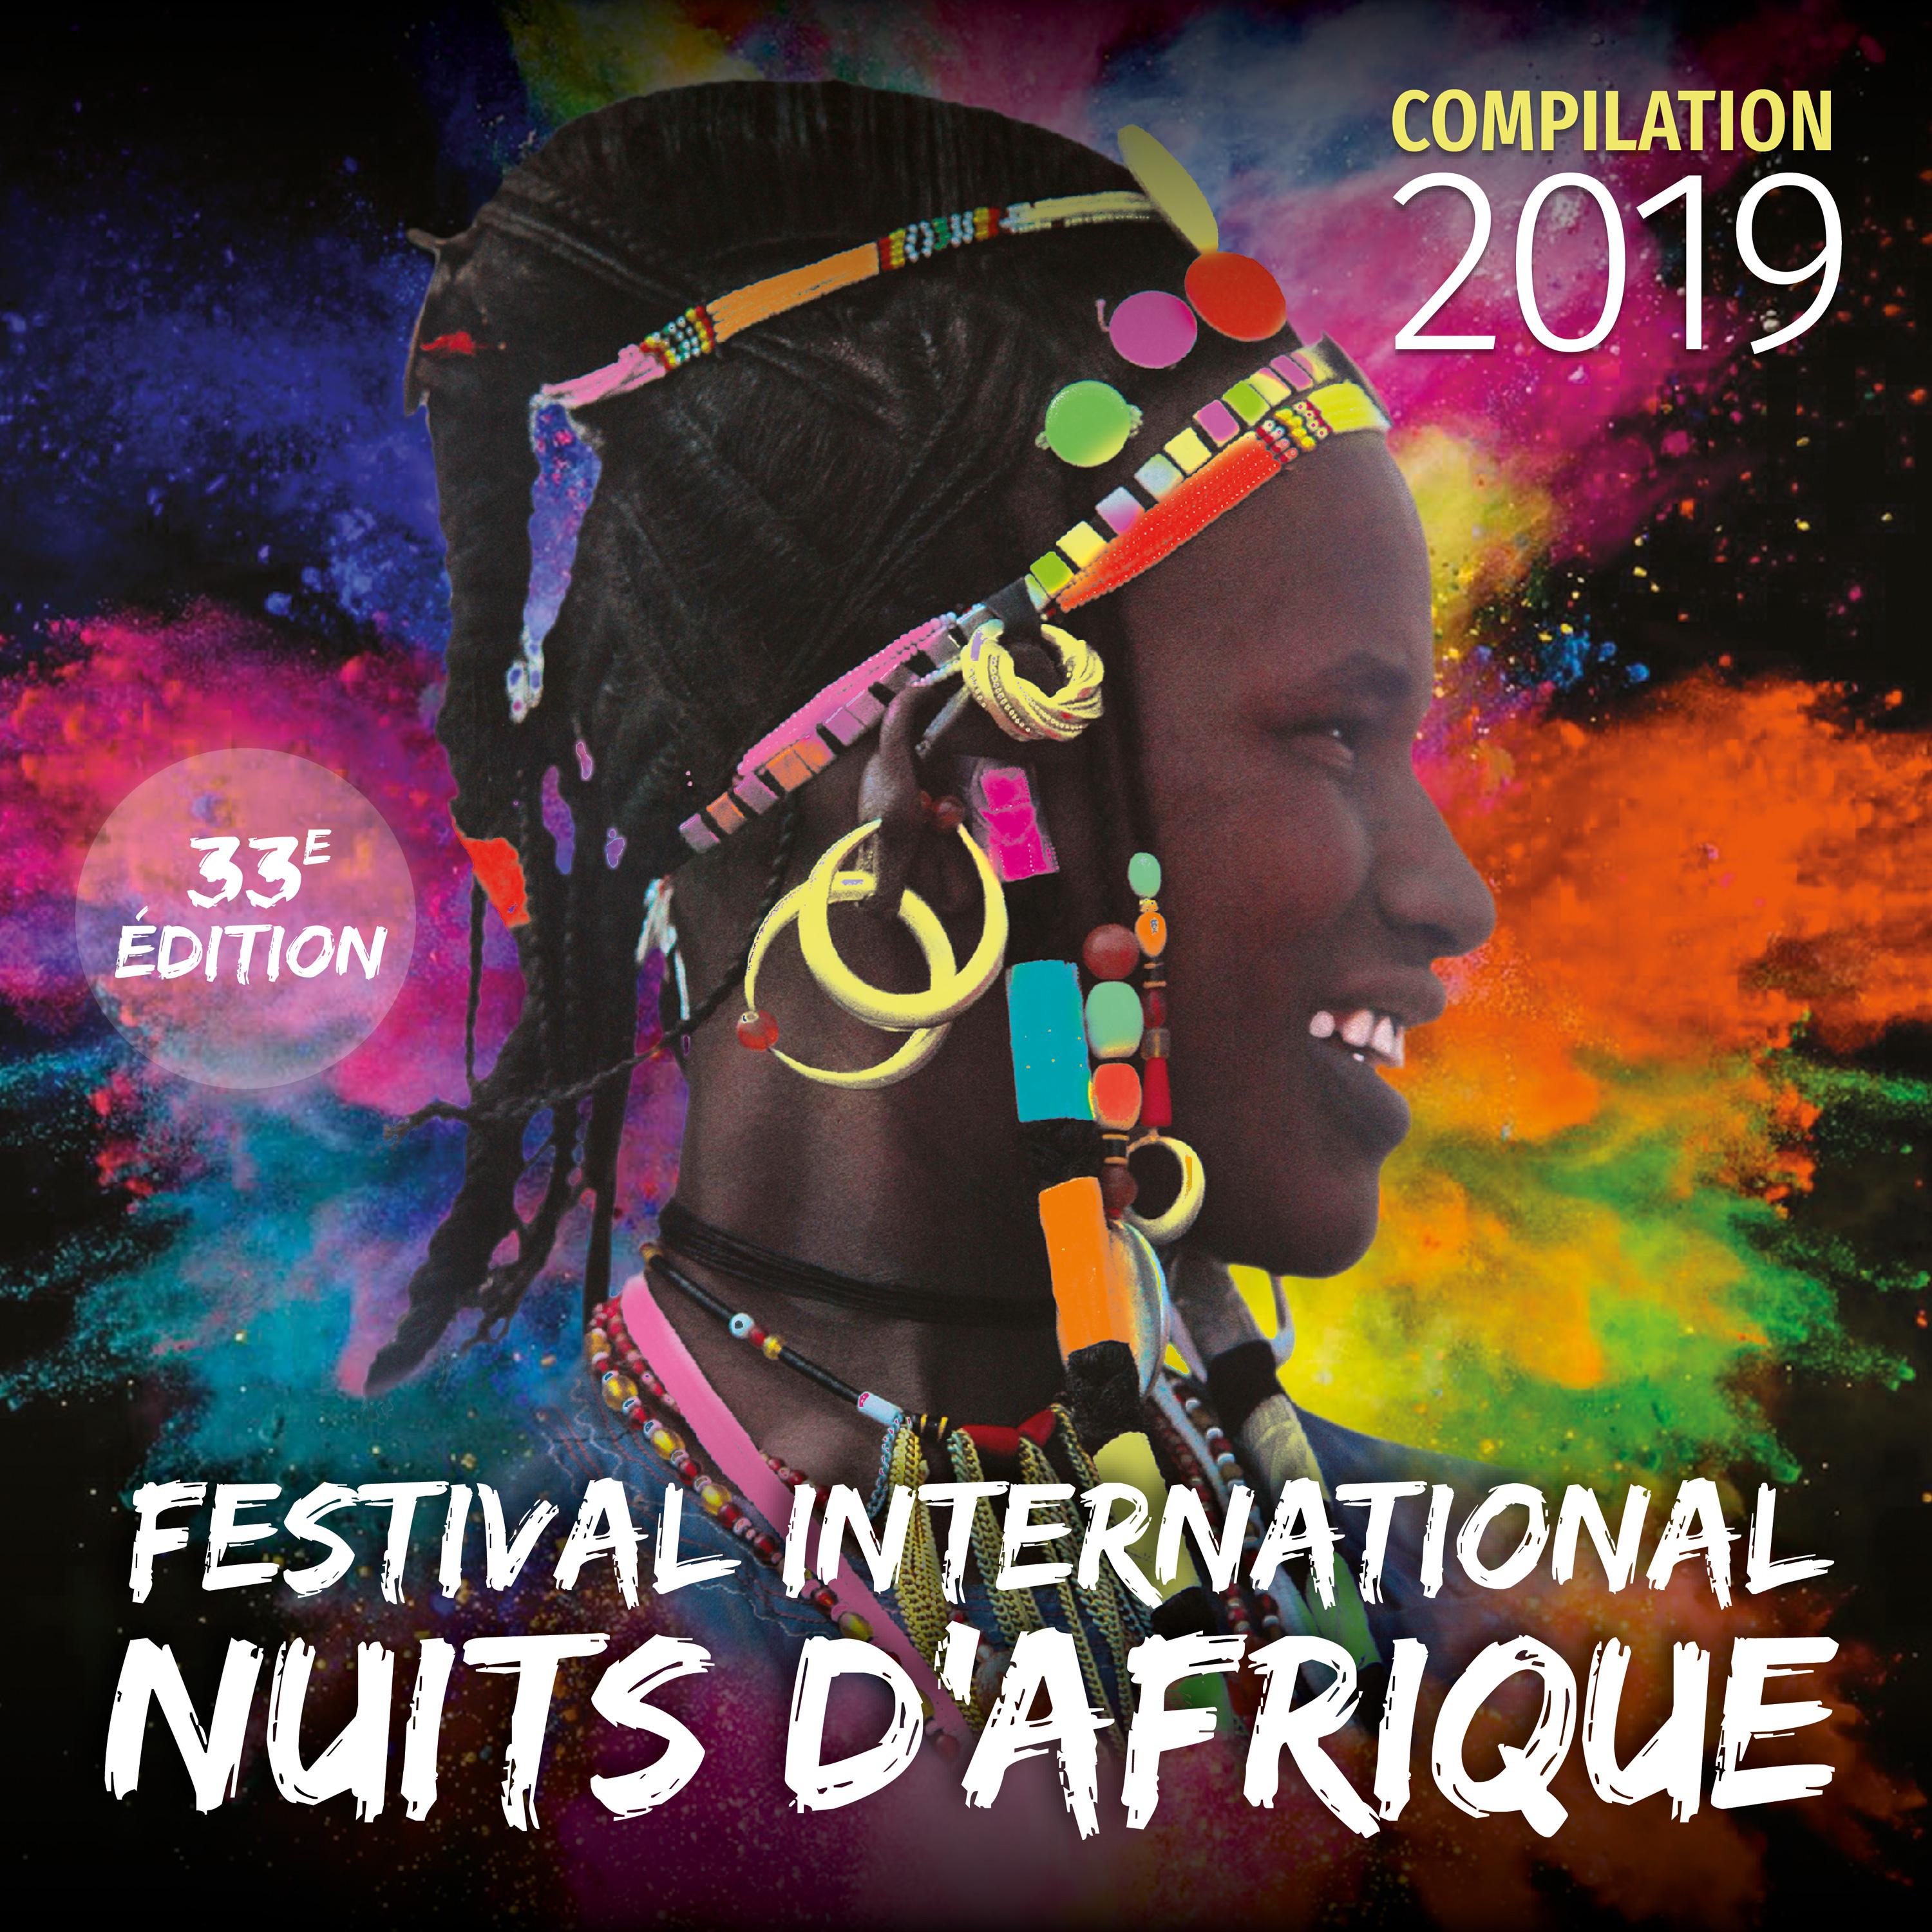 Festival international Nuits d' Afrique 33e me e dition  Compilation 2019